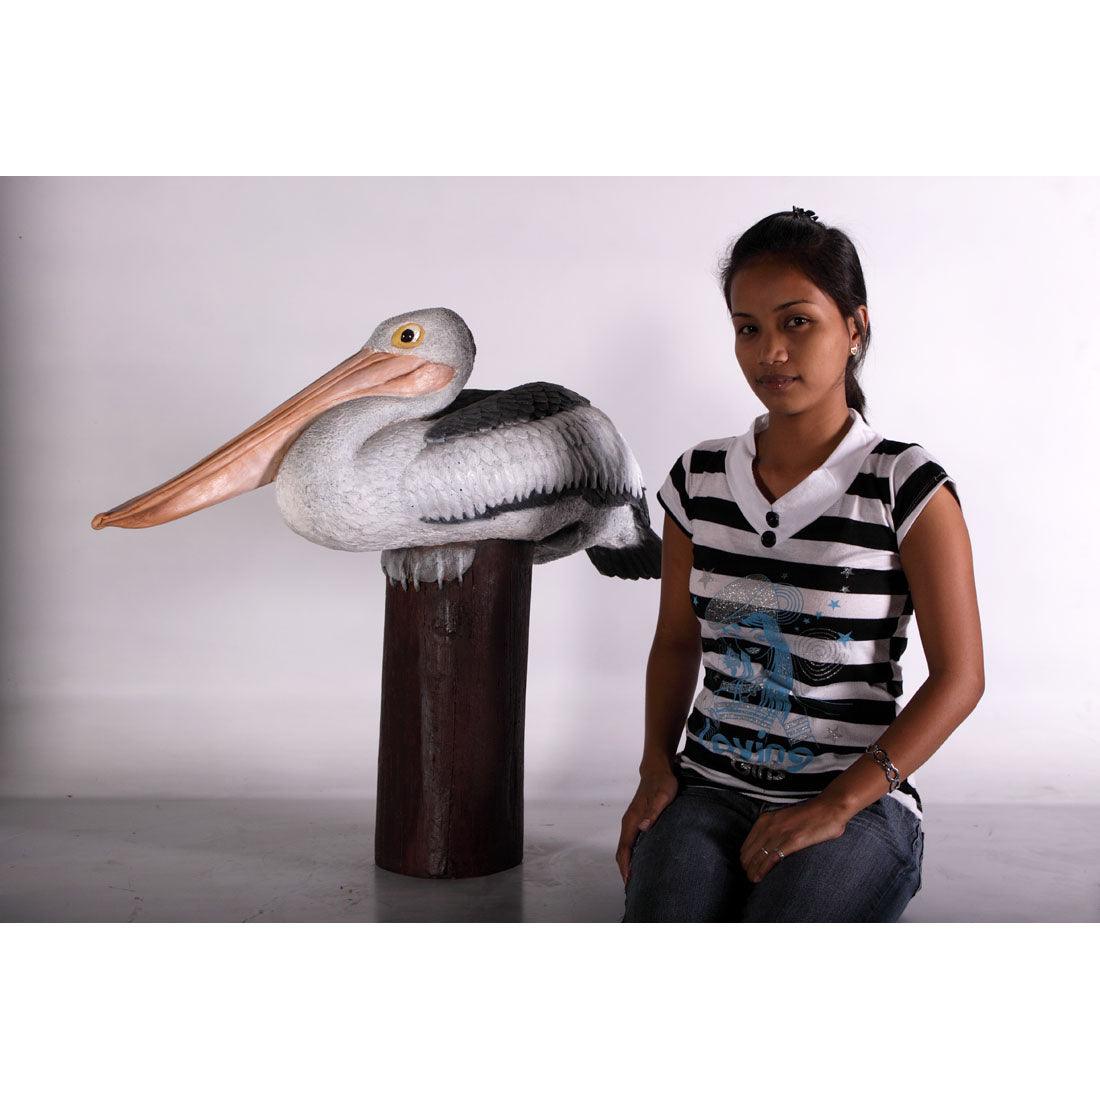 Pelican On Post Life Size Statue Prop - LM Treasures Prop Rentals 